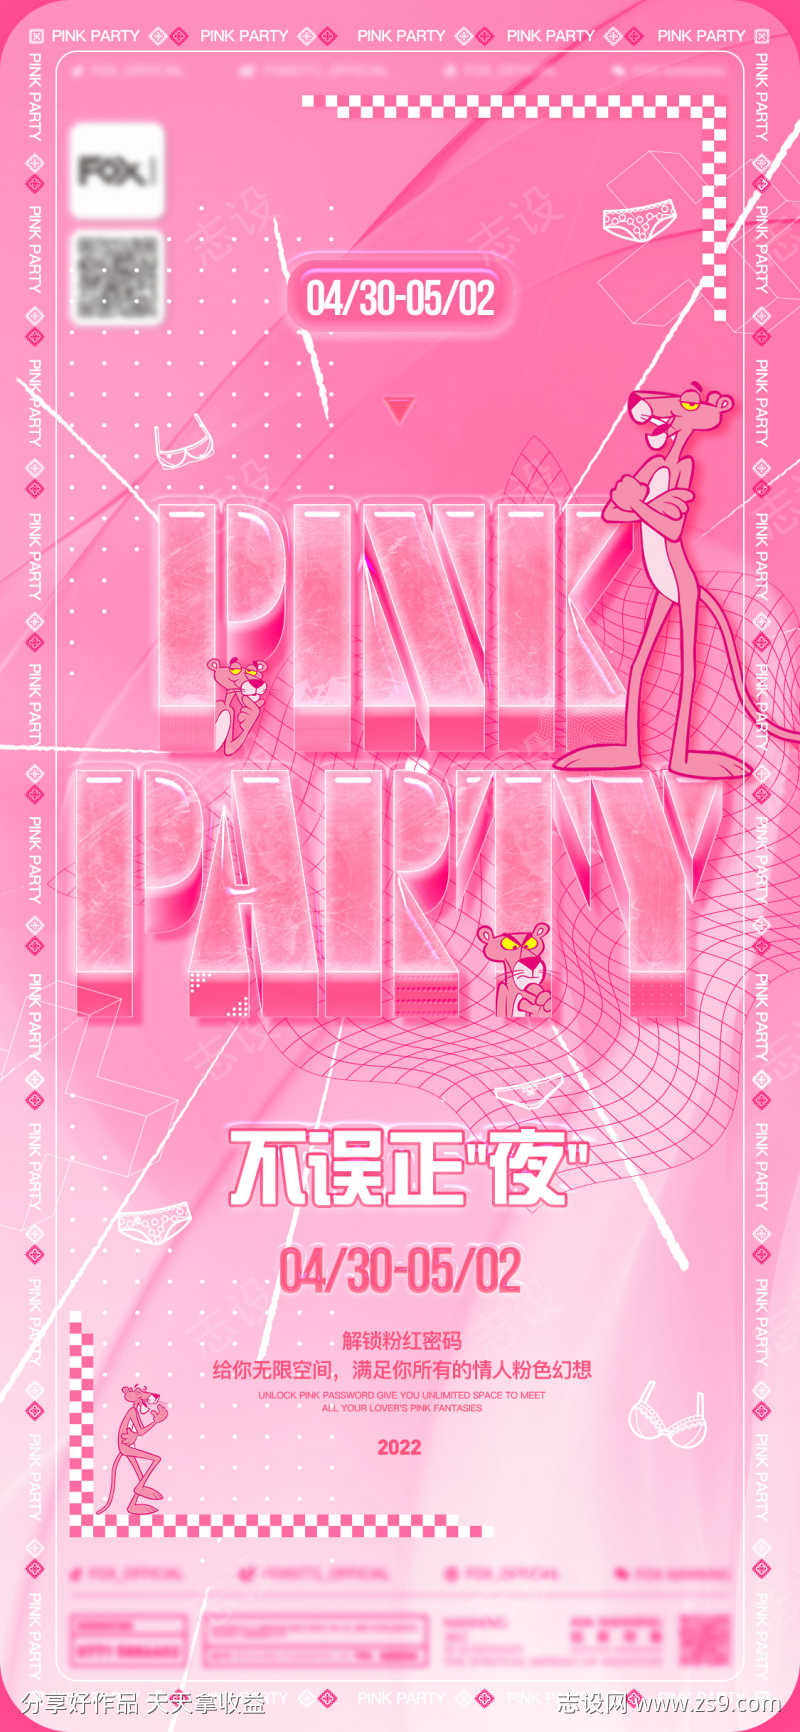 酒吧粉红派对海报